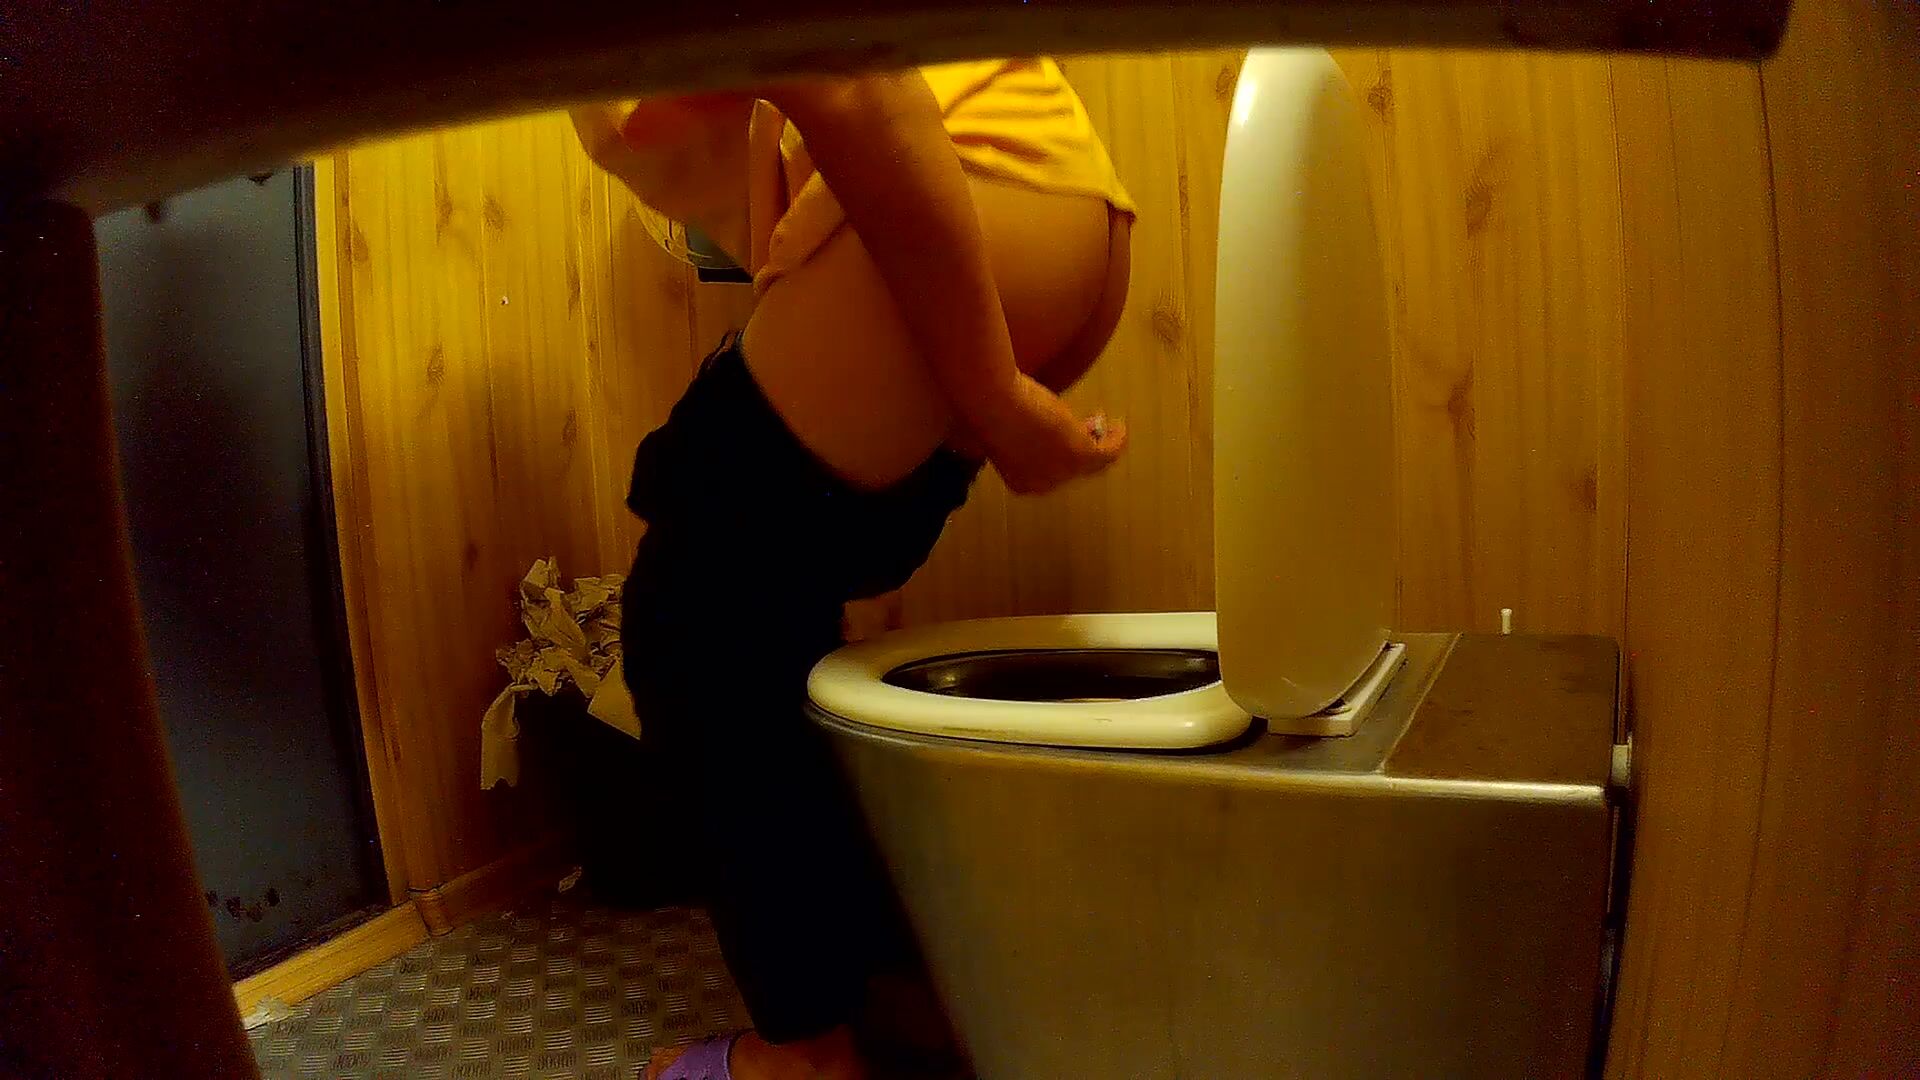 Men Bathroom Porn - Porn videos of men pissing in toilet together - Metadoll HQ Porn Leaks